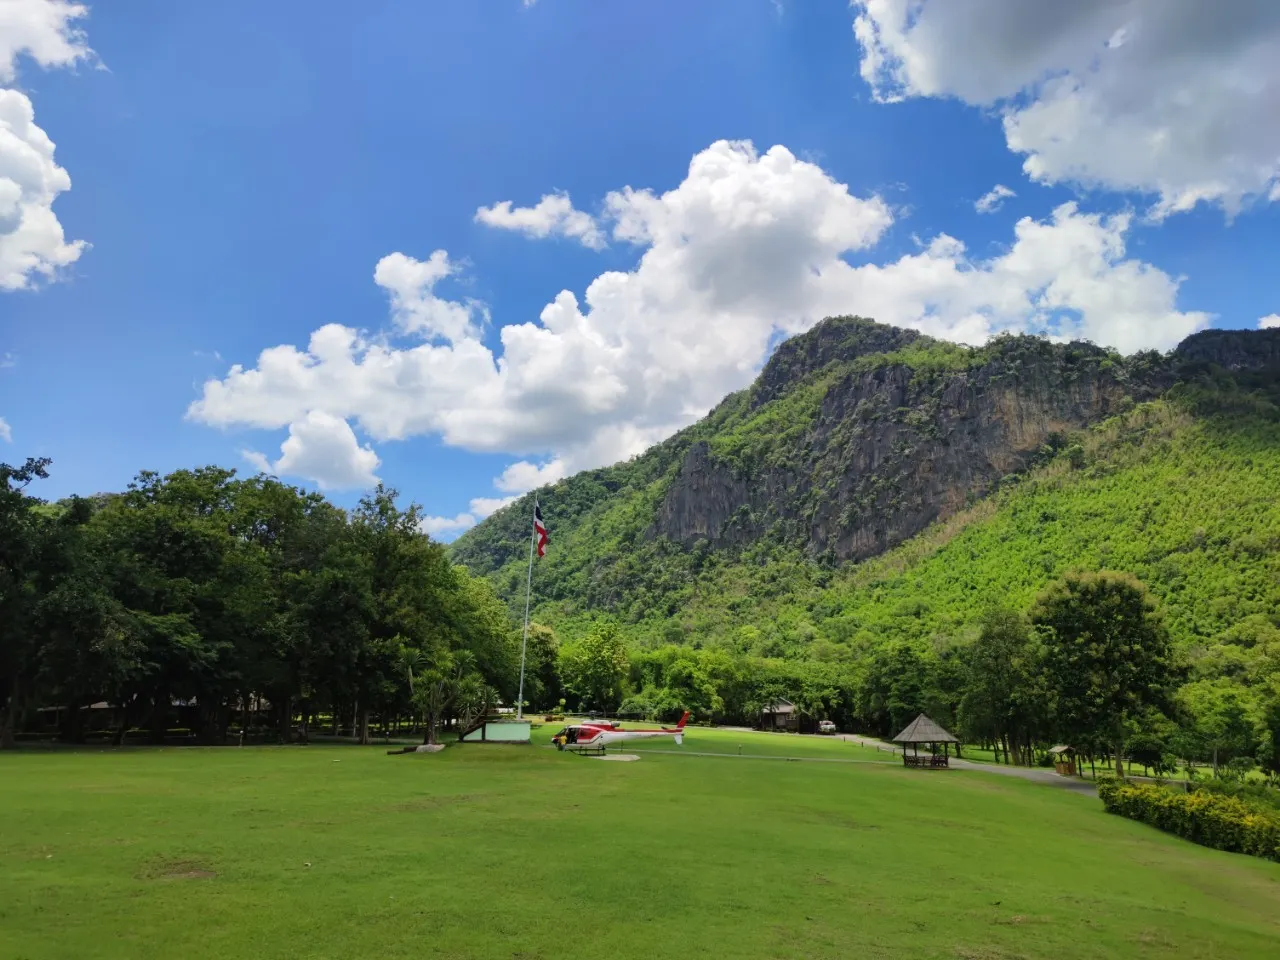 ตำบลหินตั้ง : อุทยานแห่งชาติภูผาม่าน (Source: การท่องเที่ยวแห่งประเทศไทย)